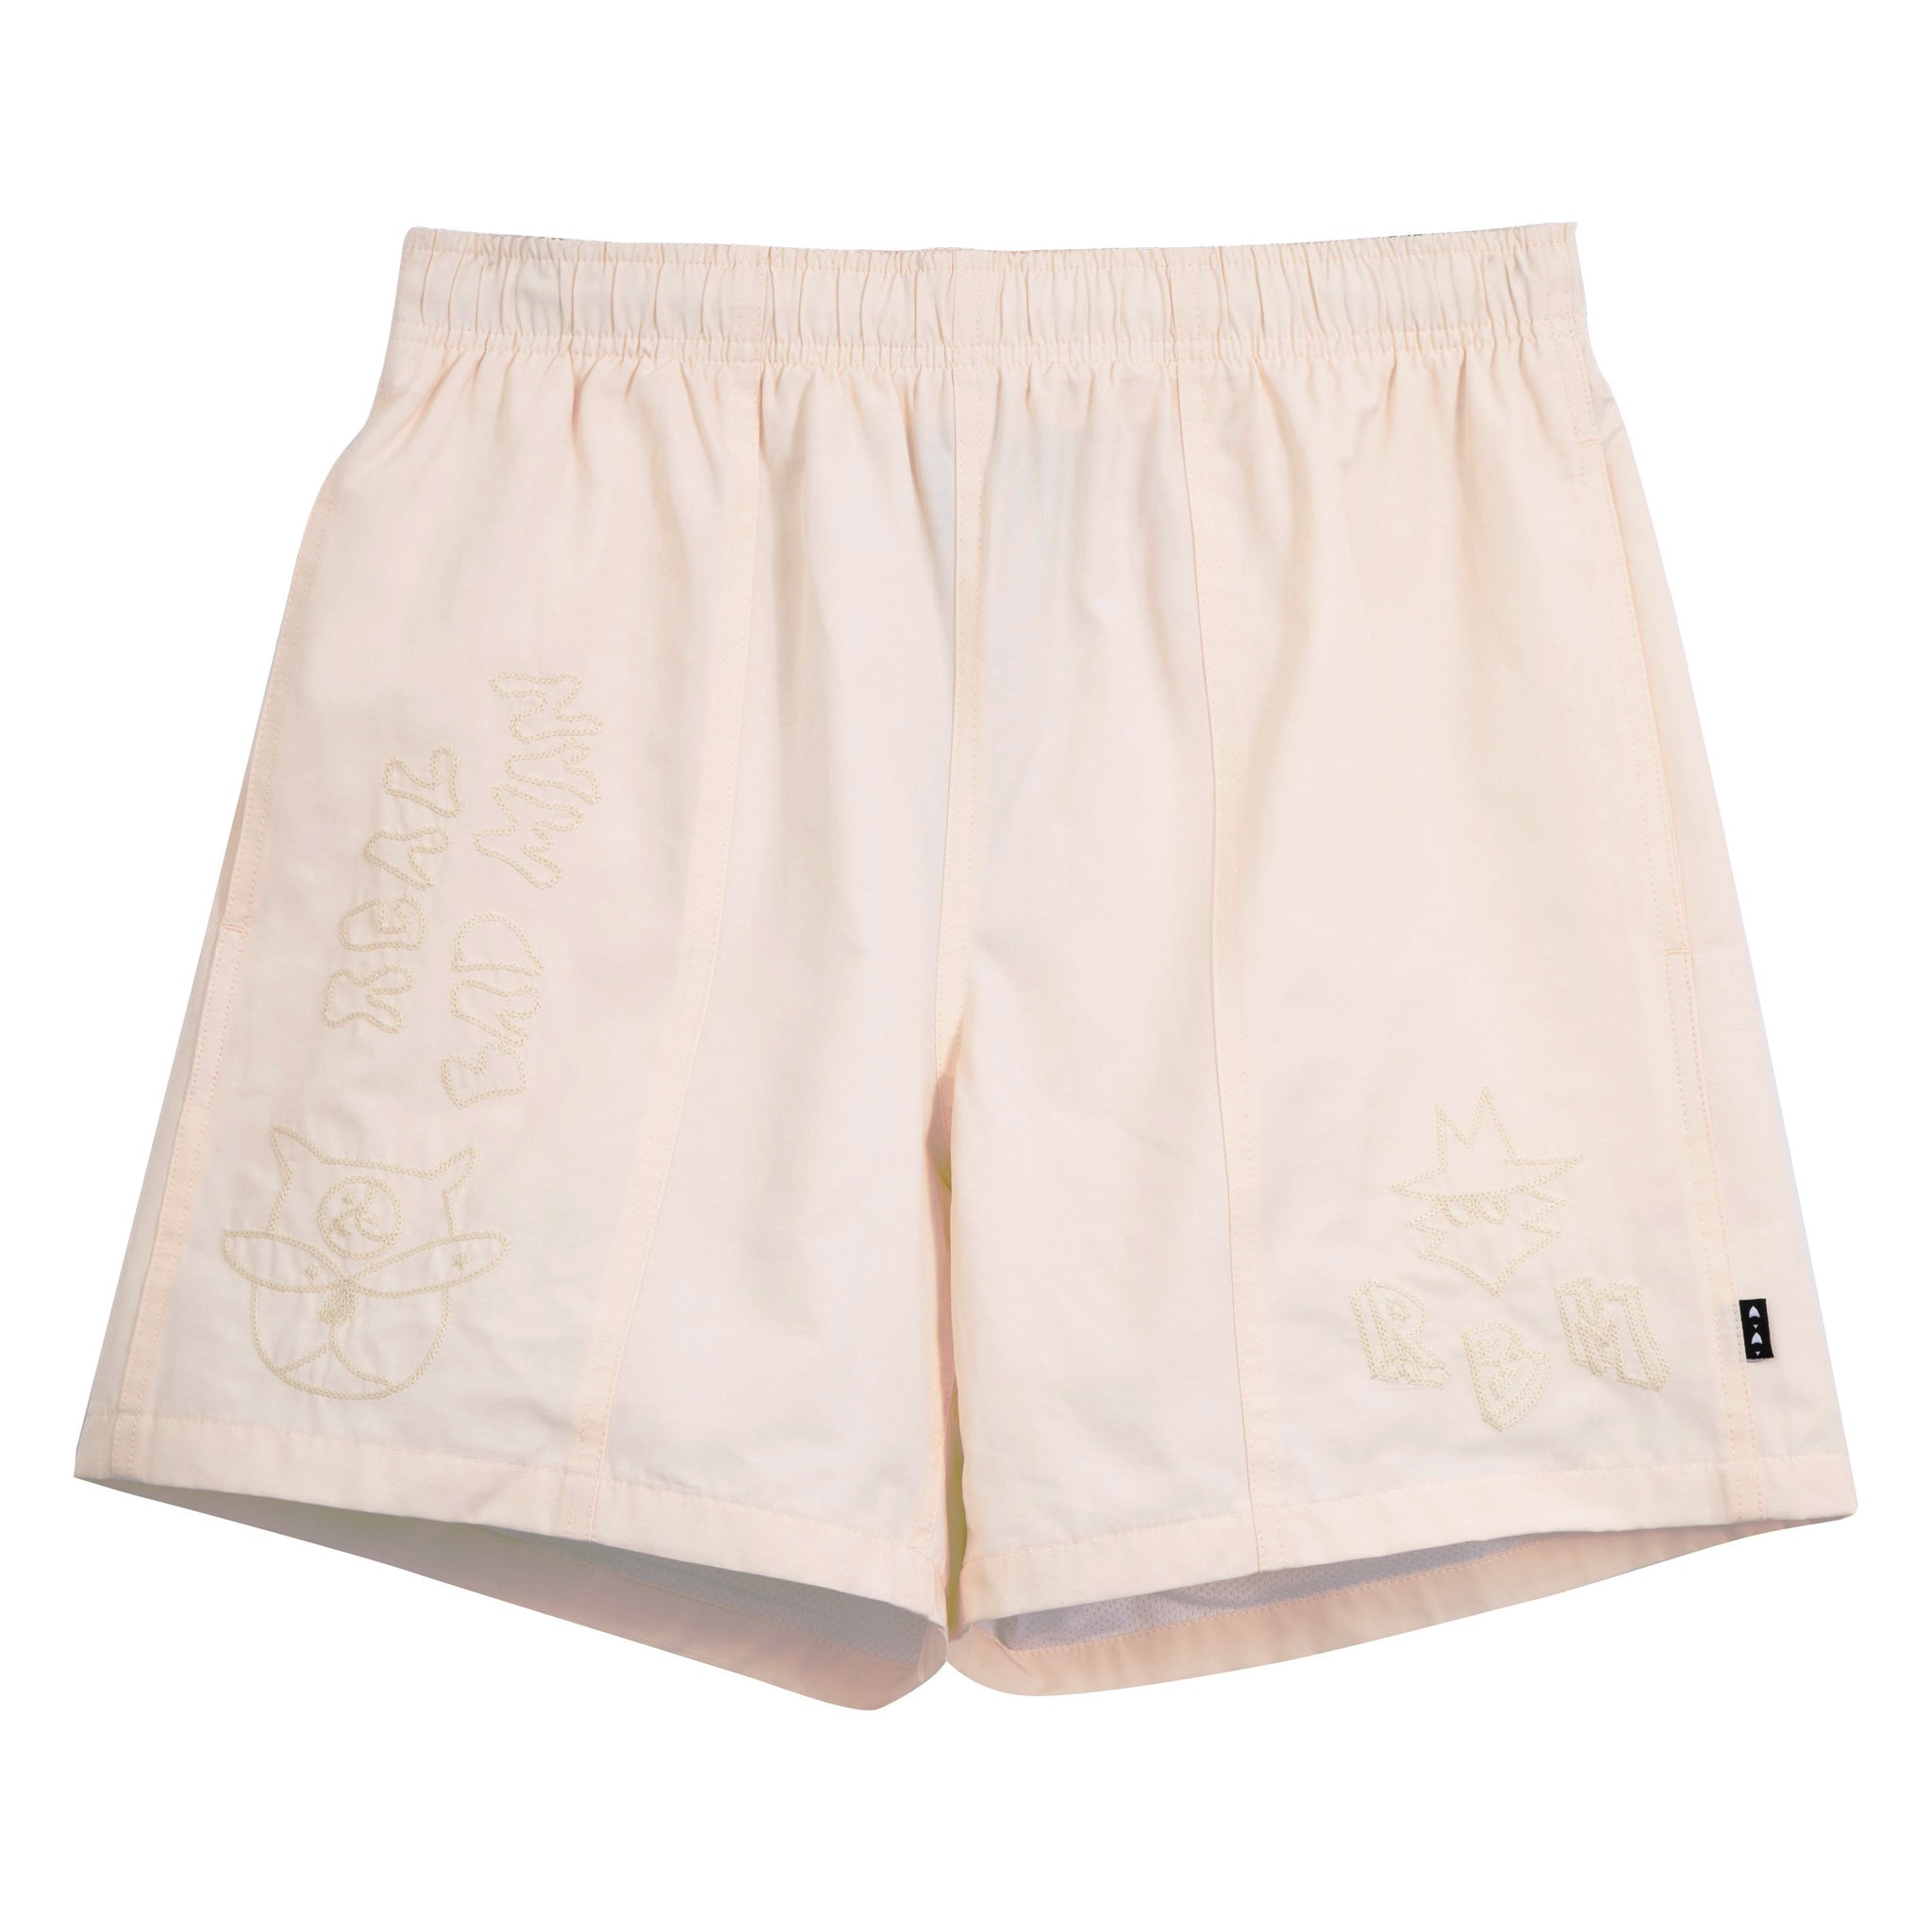 Deliverance Shorts - Cream